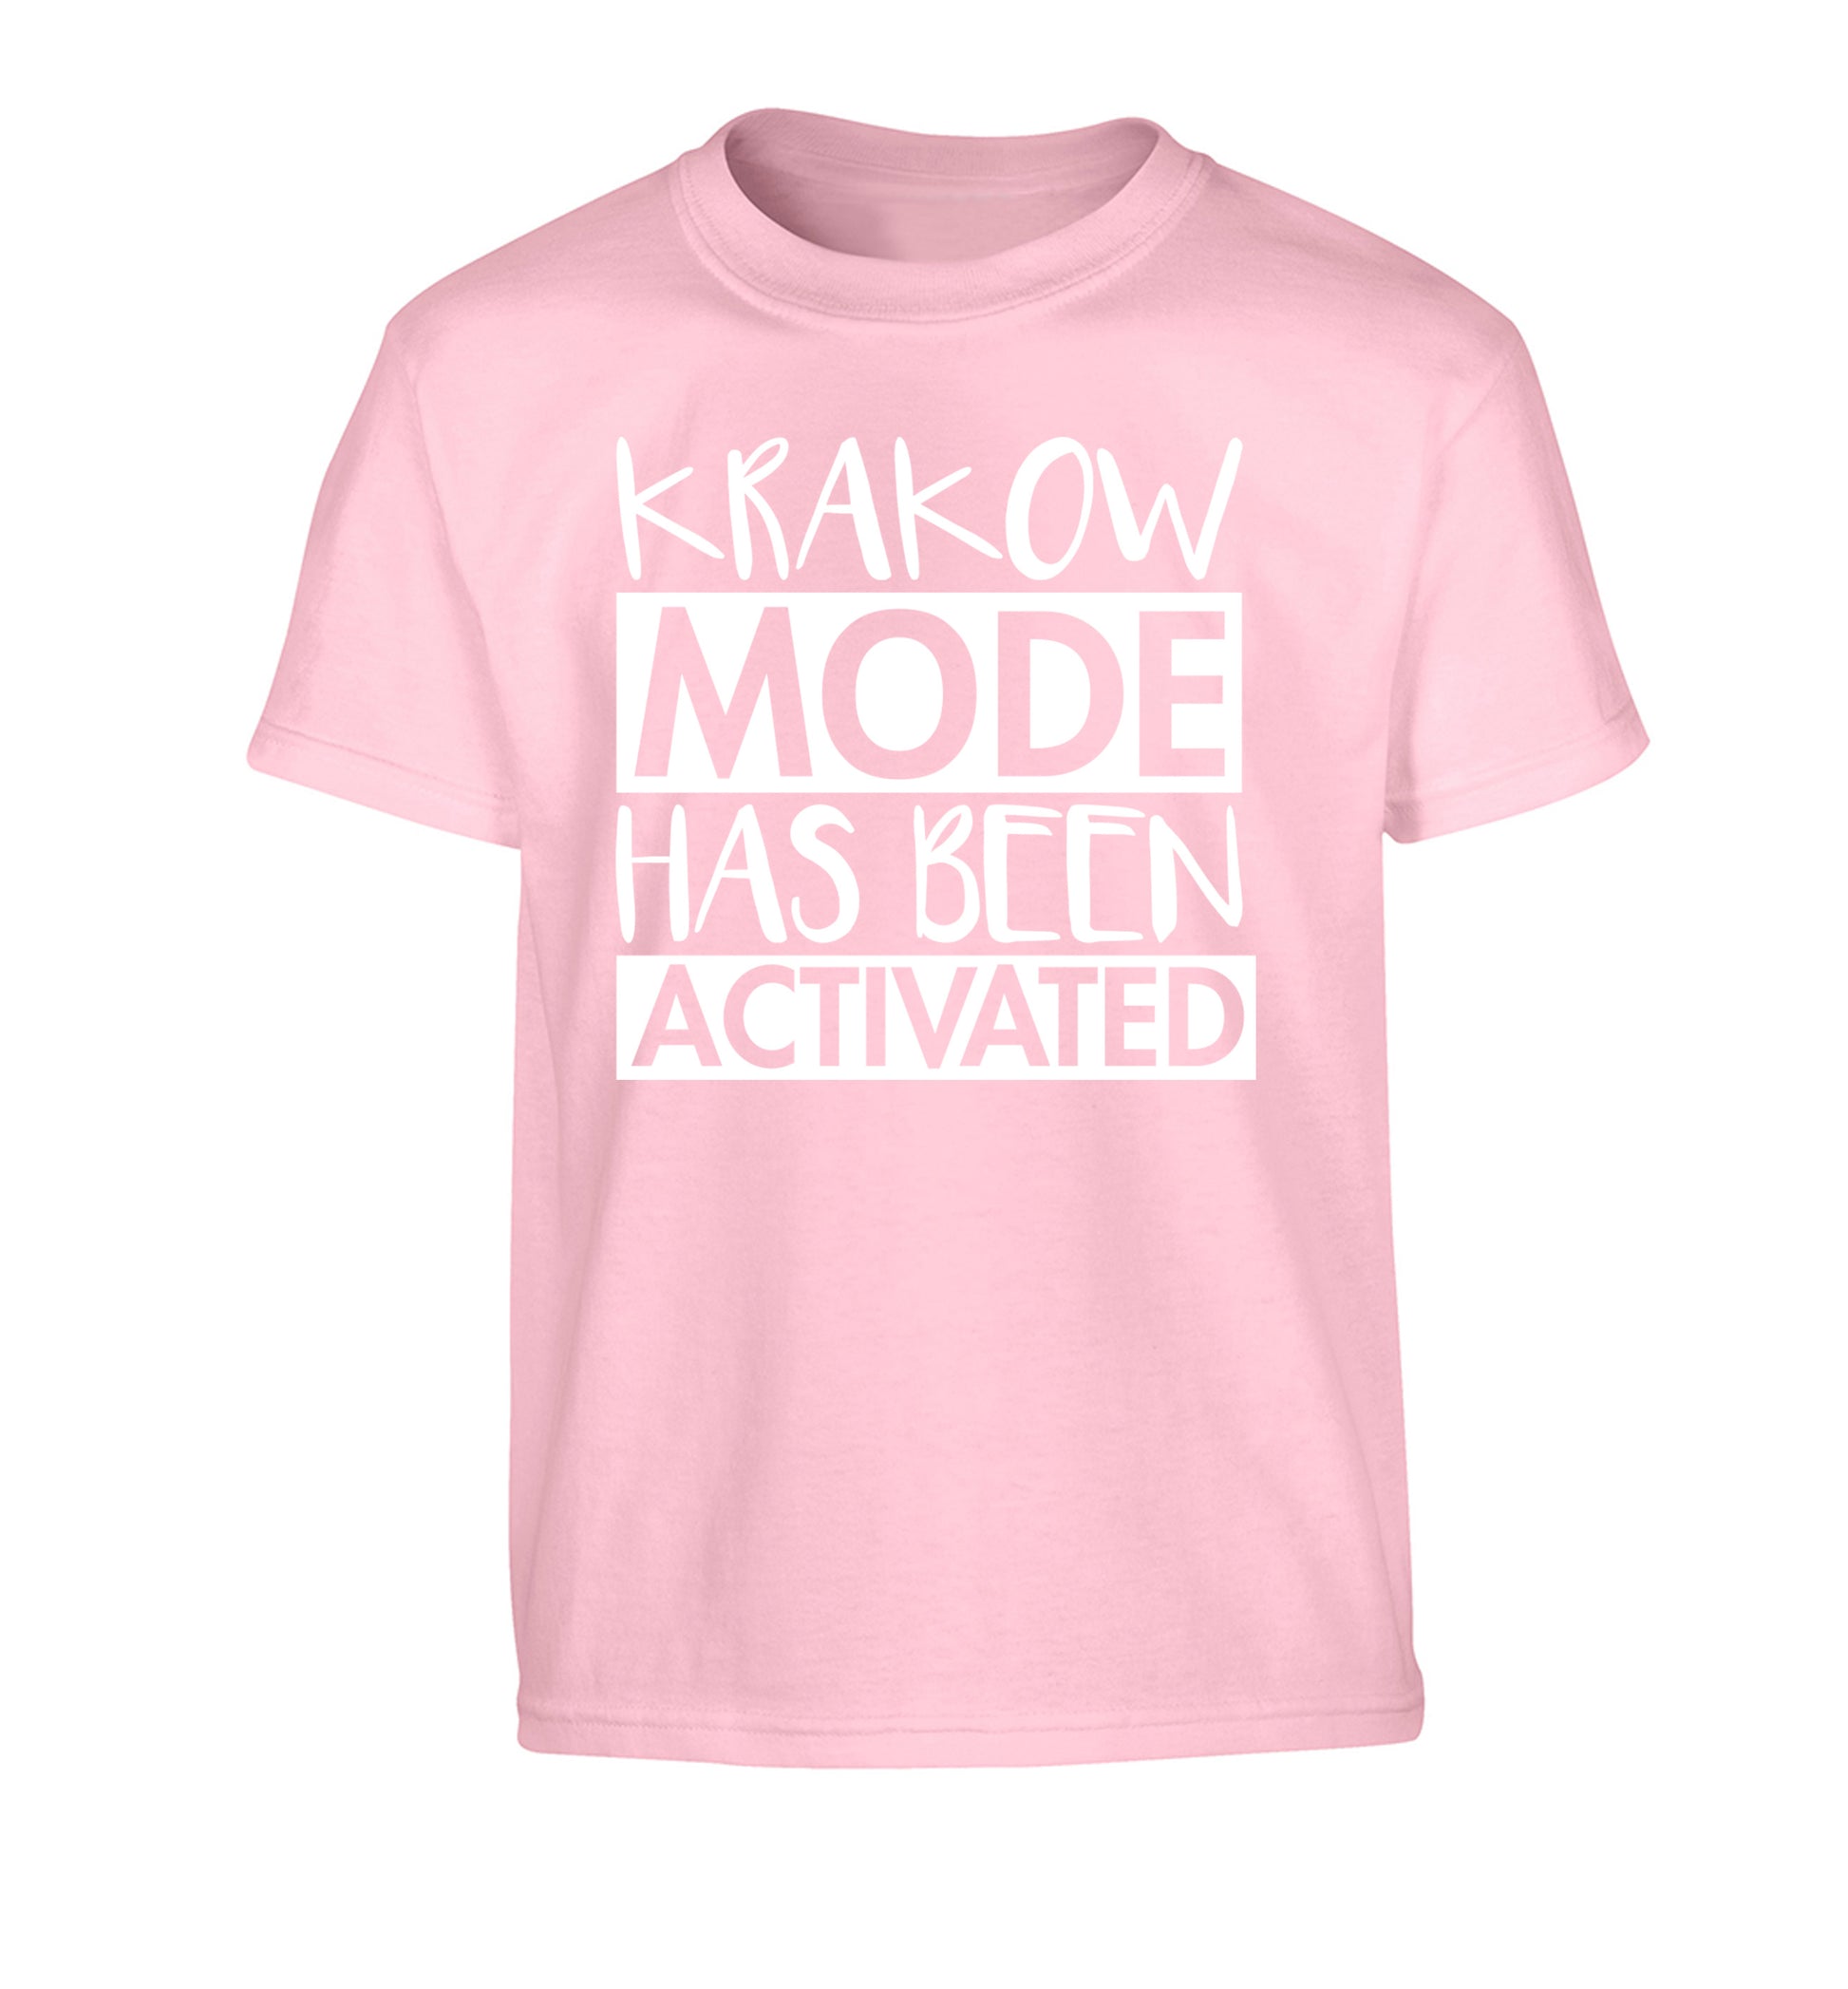 Krakow mode has been activated Children's light pink Tshirt 12-13 Years